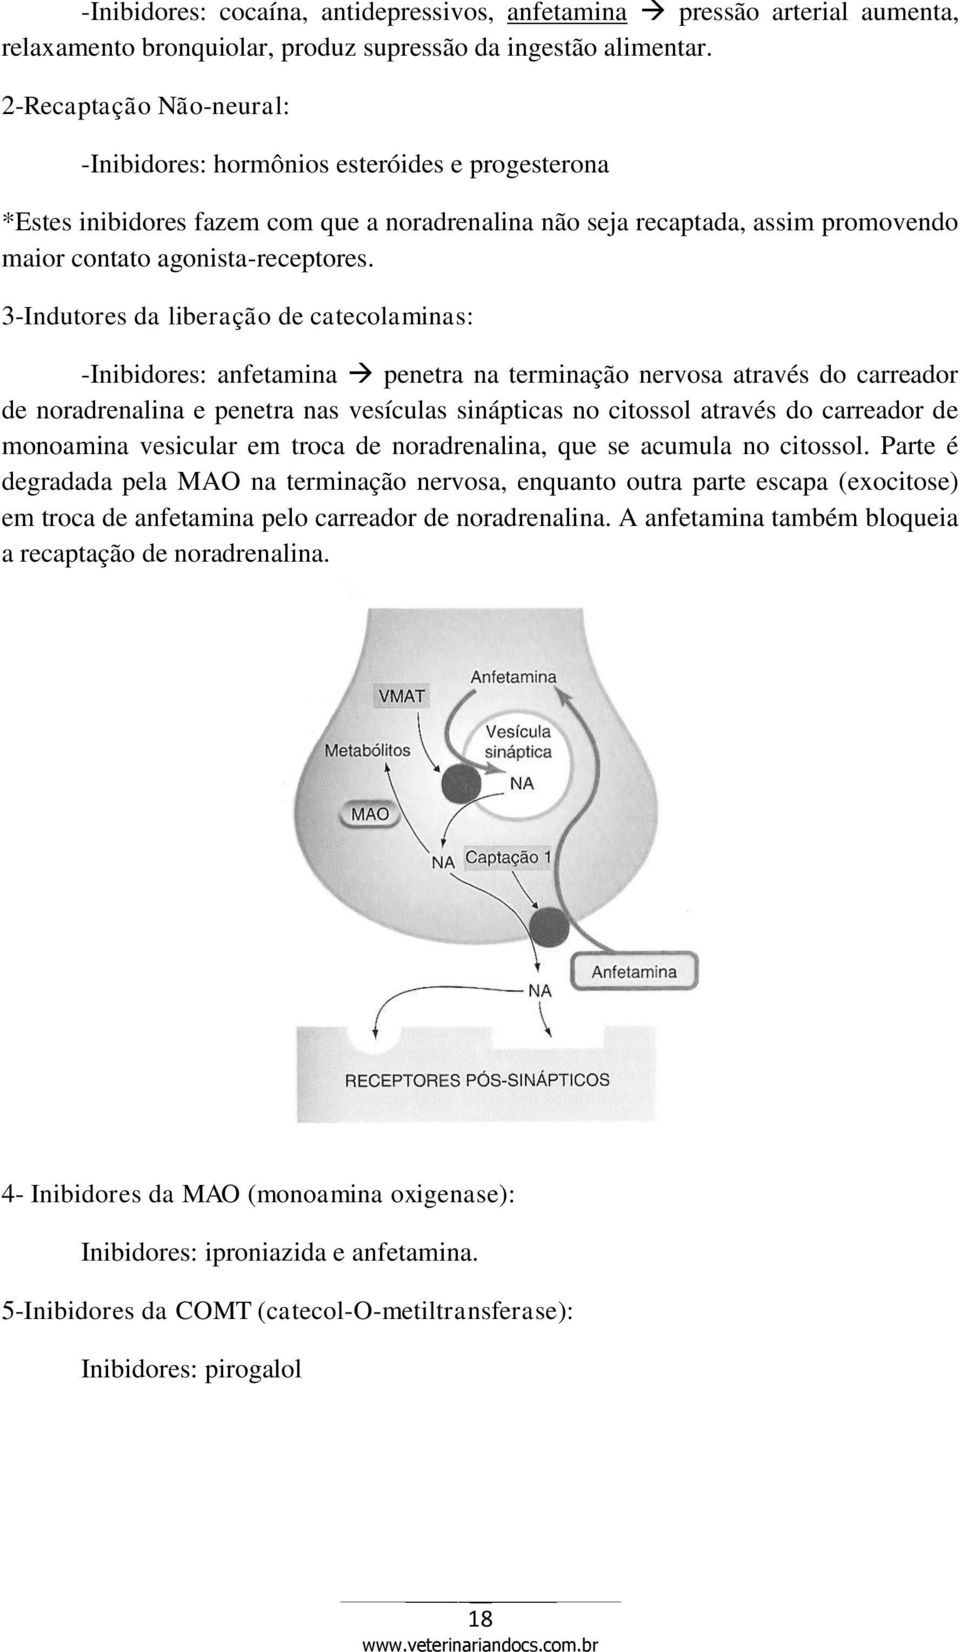 3-Indutores da liberação de catecolaminas: -Inibidores: anfetamina penetra na terminação nervosa através do carreador de noradrenalina e penetra nas vesículas sinápticas no citossol através do